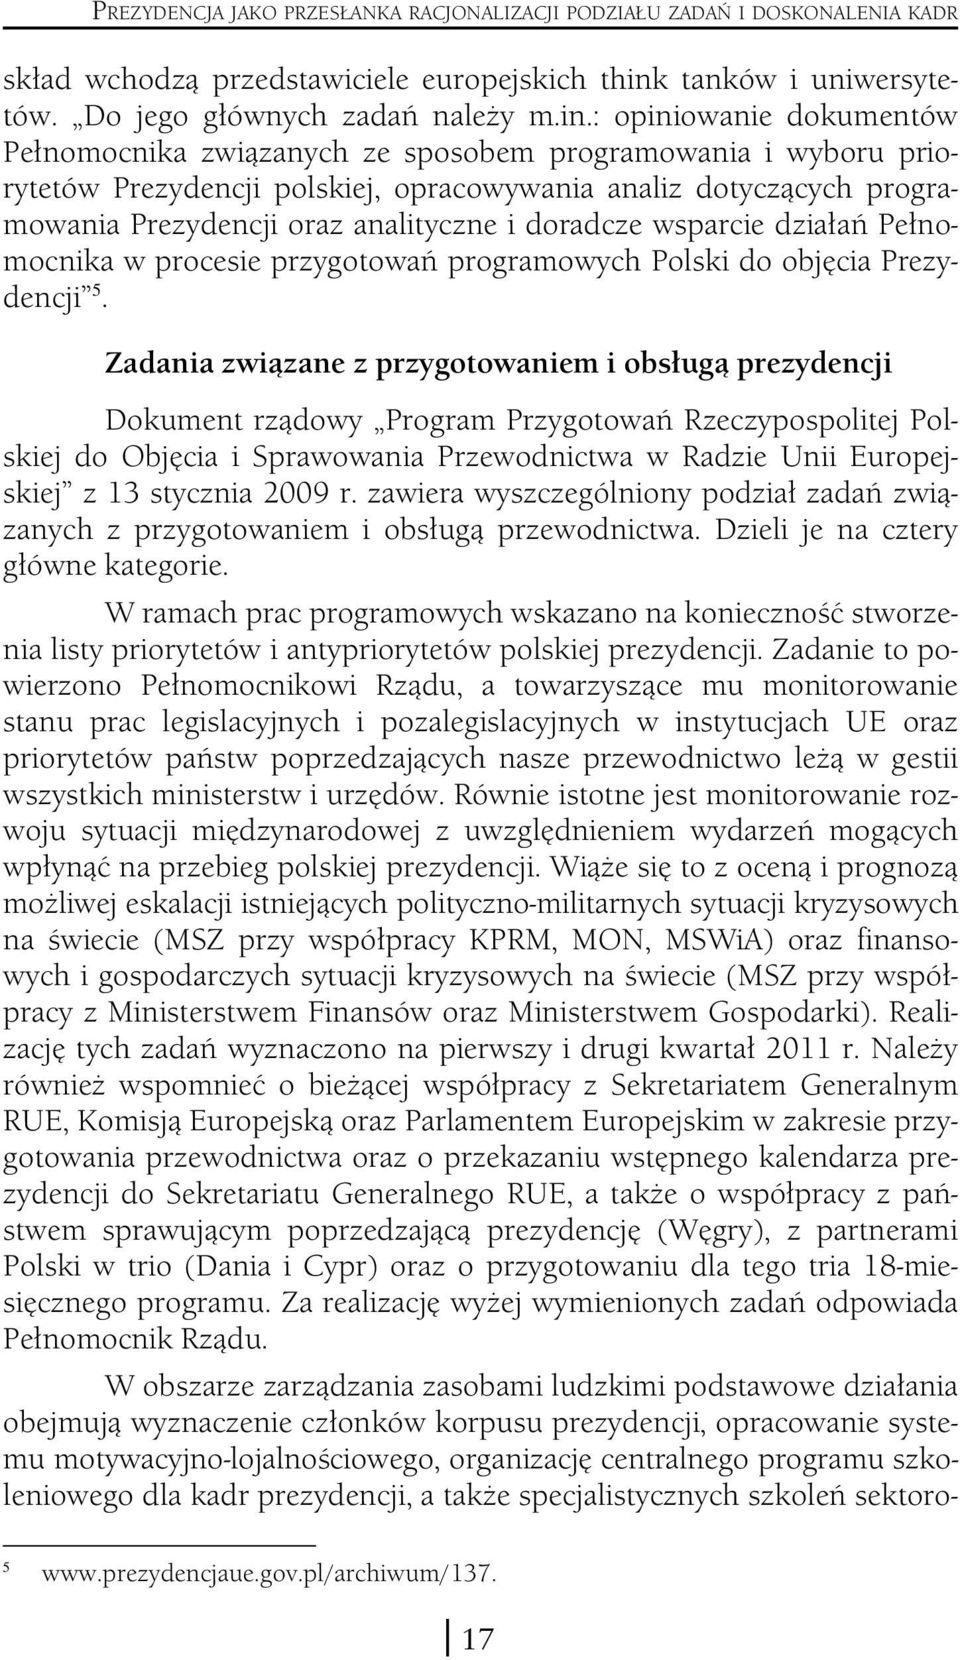 : opiniowanie dokumentów Pełnomocnika związanych ze sposobem programowania i wyboru priorytetów Prezydencji polskiej, opracowywania analiz dotyczących programowania Prezydencji oraz analityczne i